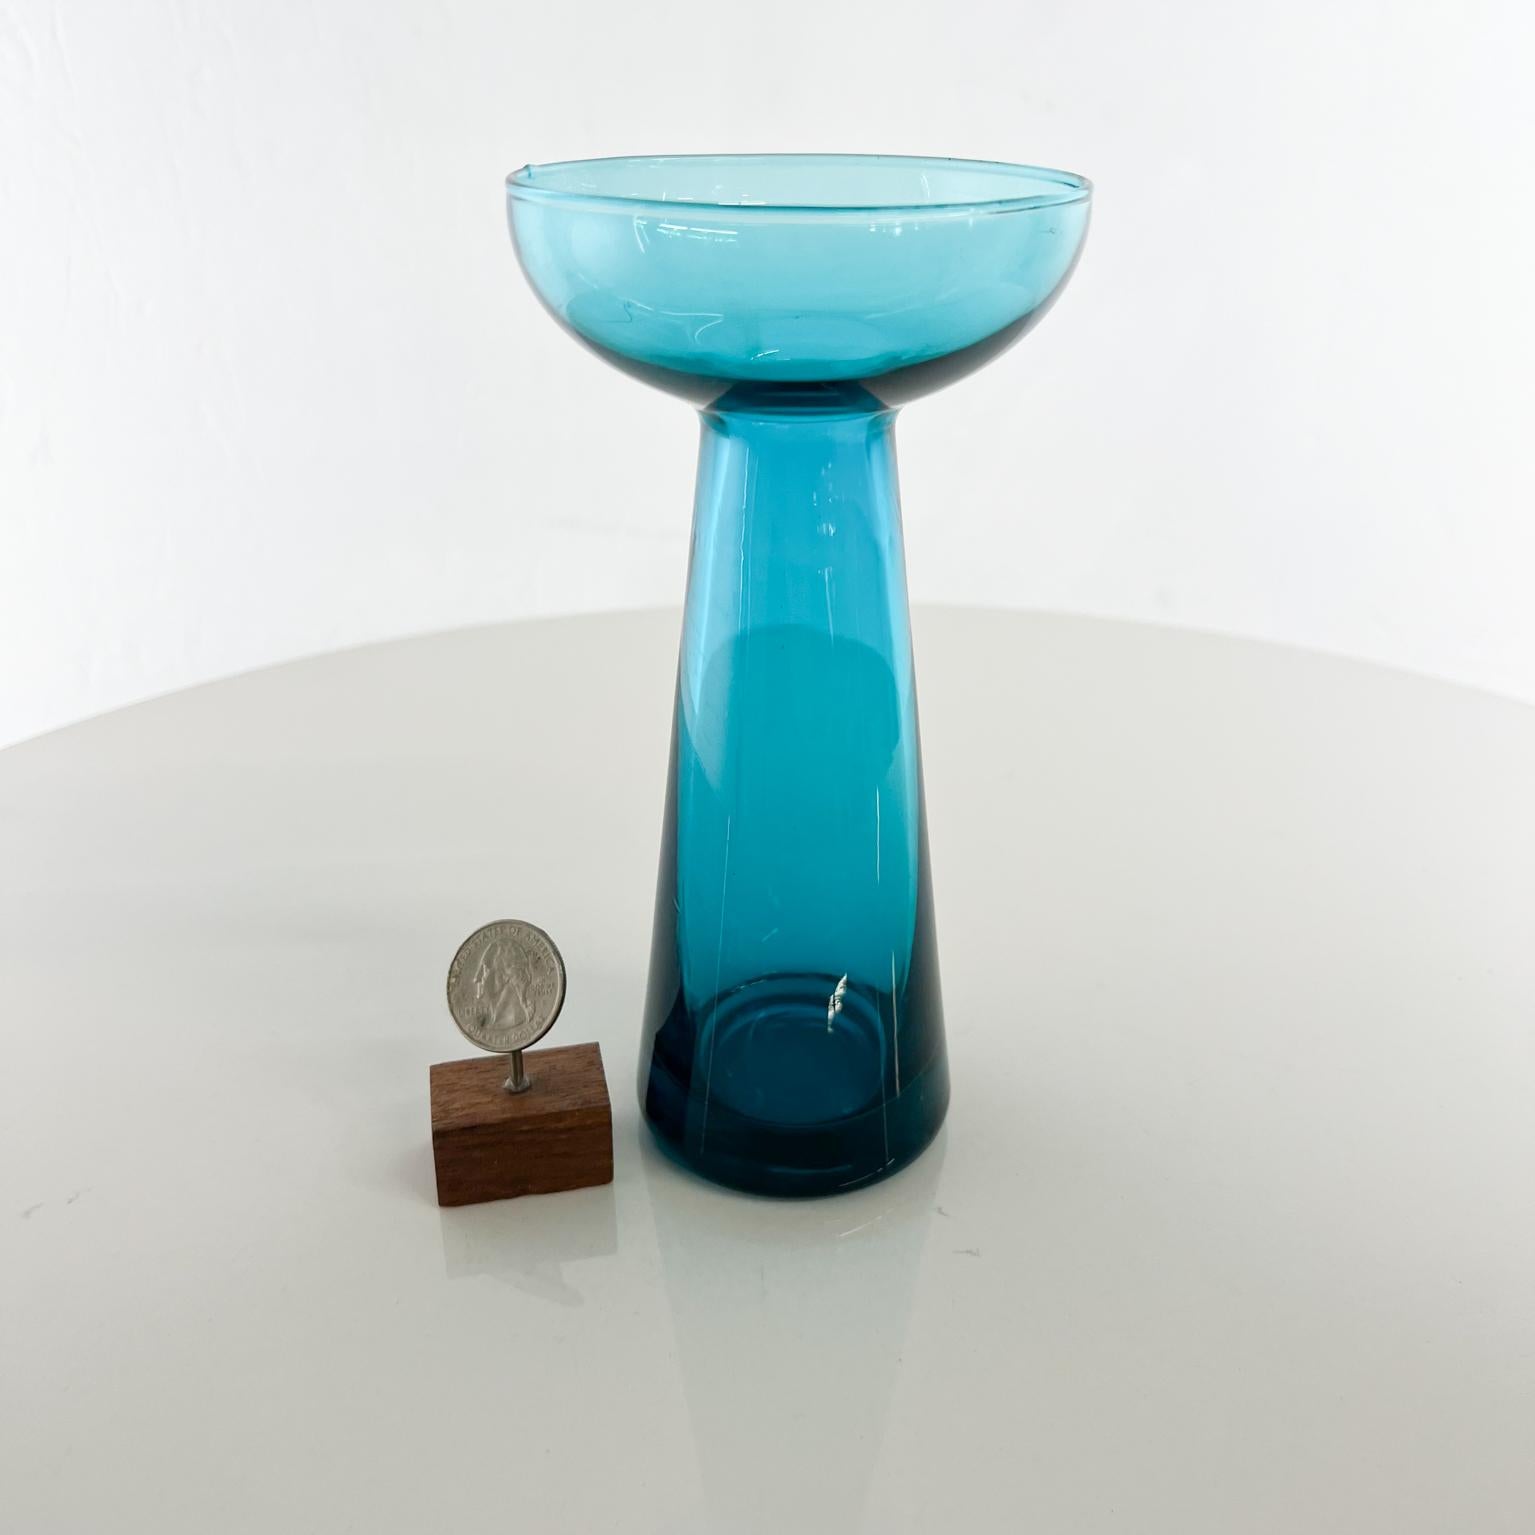 1960er Jahre Hellblaue Knospenvase aus skandinavischem Modern Art Glas.
Unmarkiert
Maße: 6,75 hoch x 3,5 Durchmesser
Gebrauchter Vintage-Zustand.
Siehe mitgelieferte Bilder.
 